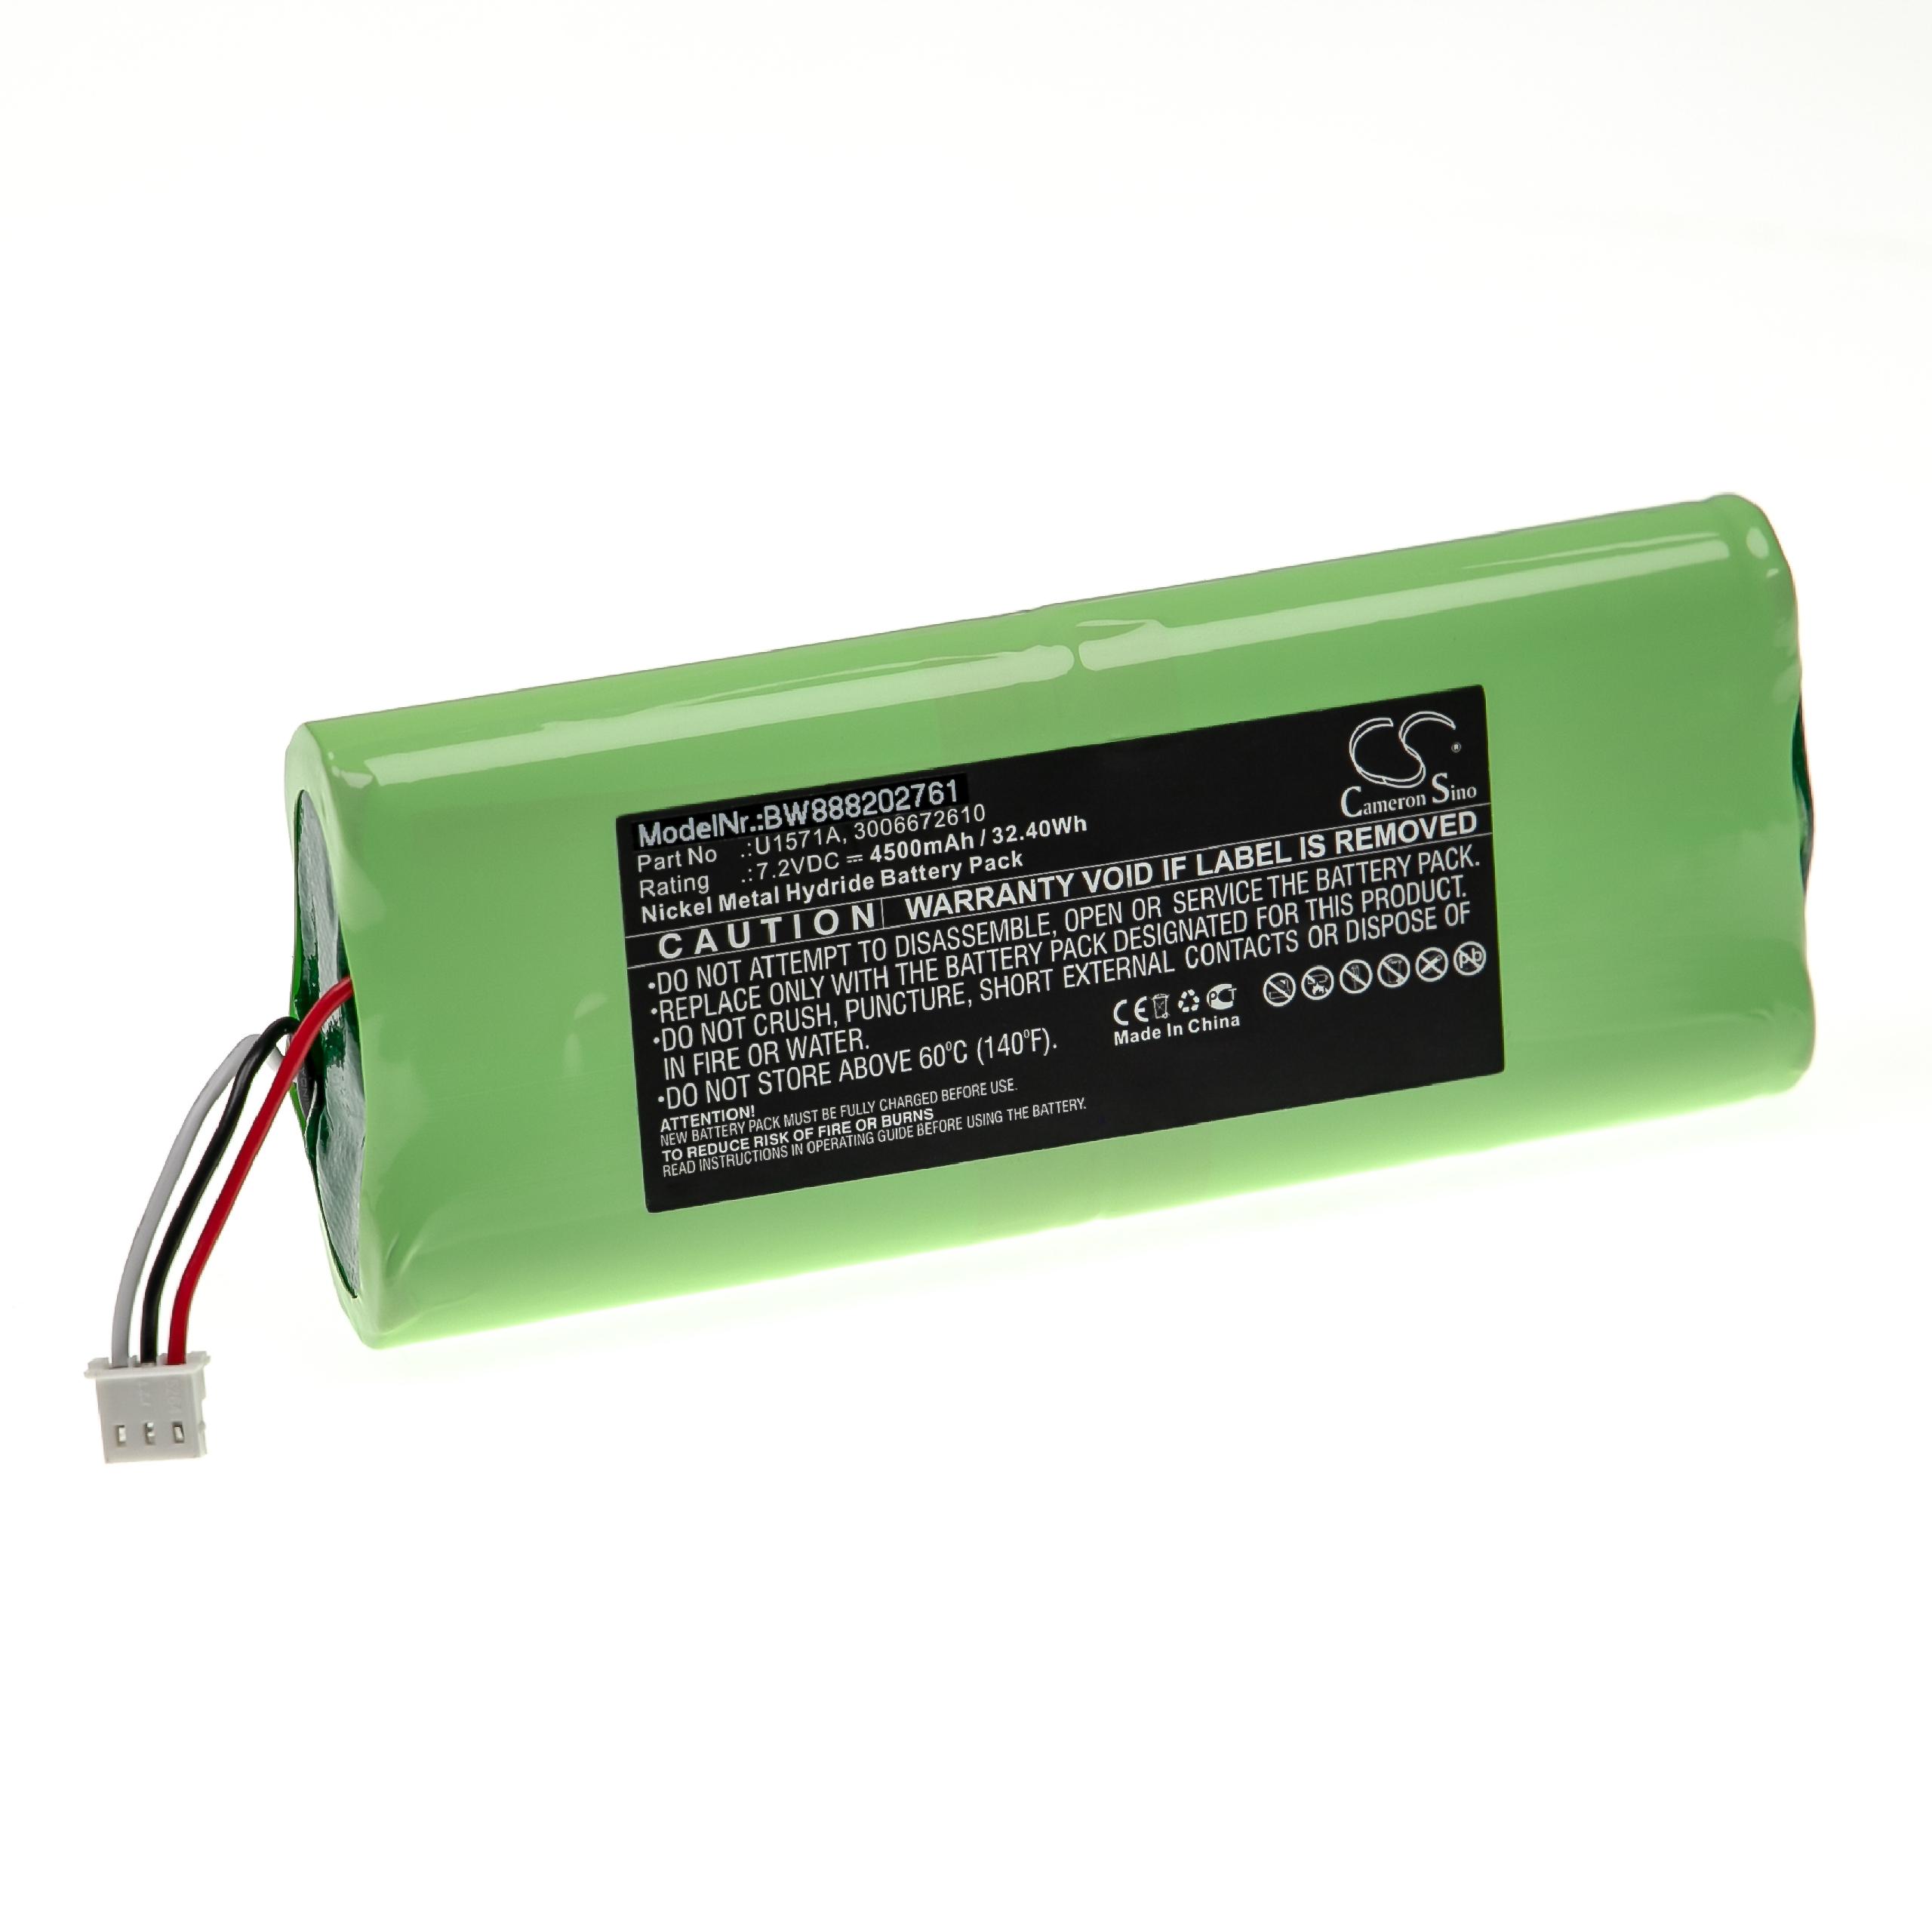 Akumulator do przyrządu pomiarowego zamiennik Keysight U1571A, 3006672610 - 4500 mAh 7,2 V NiMH